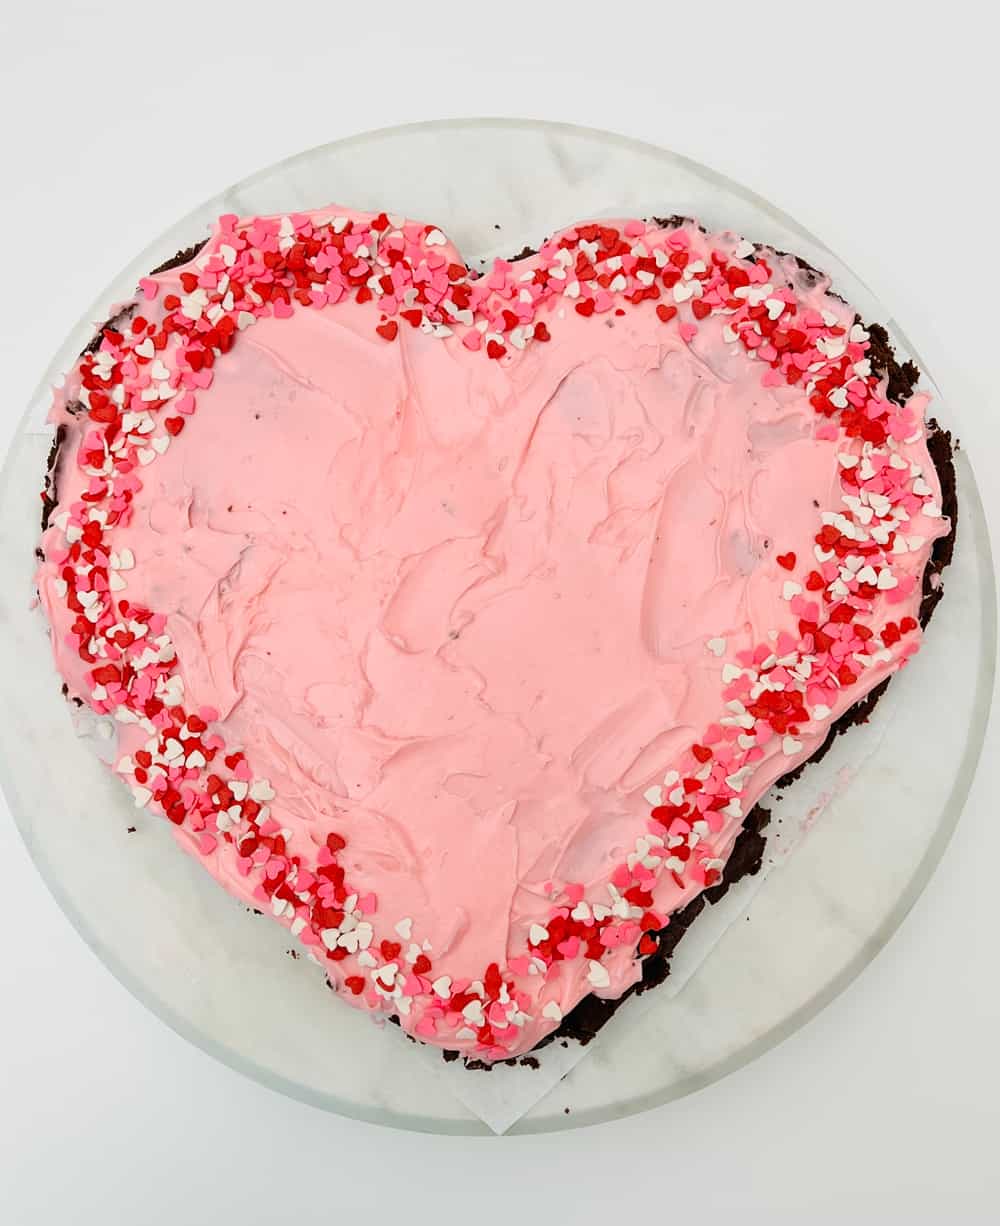 Red Velvet Cake Heart Shape - The Cake Town